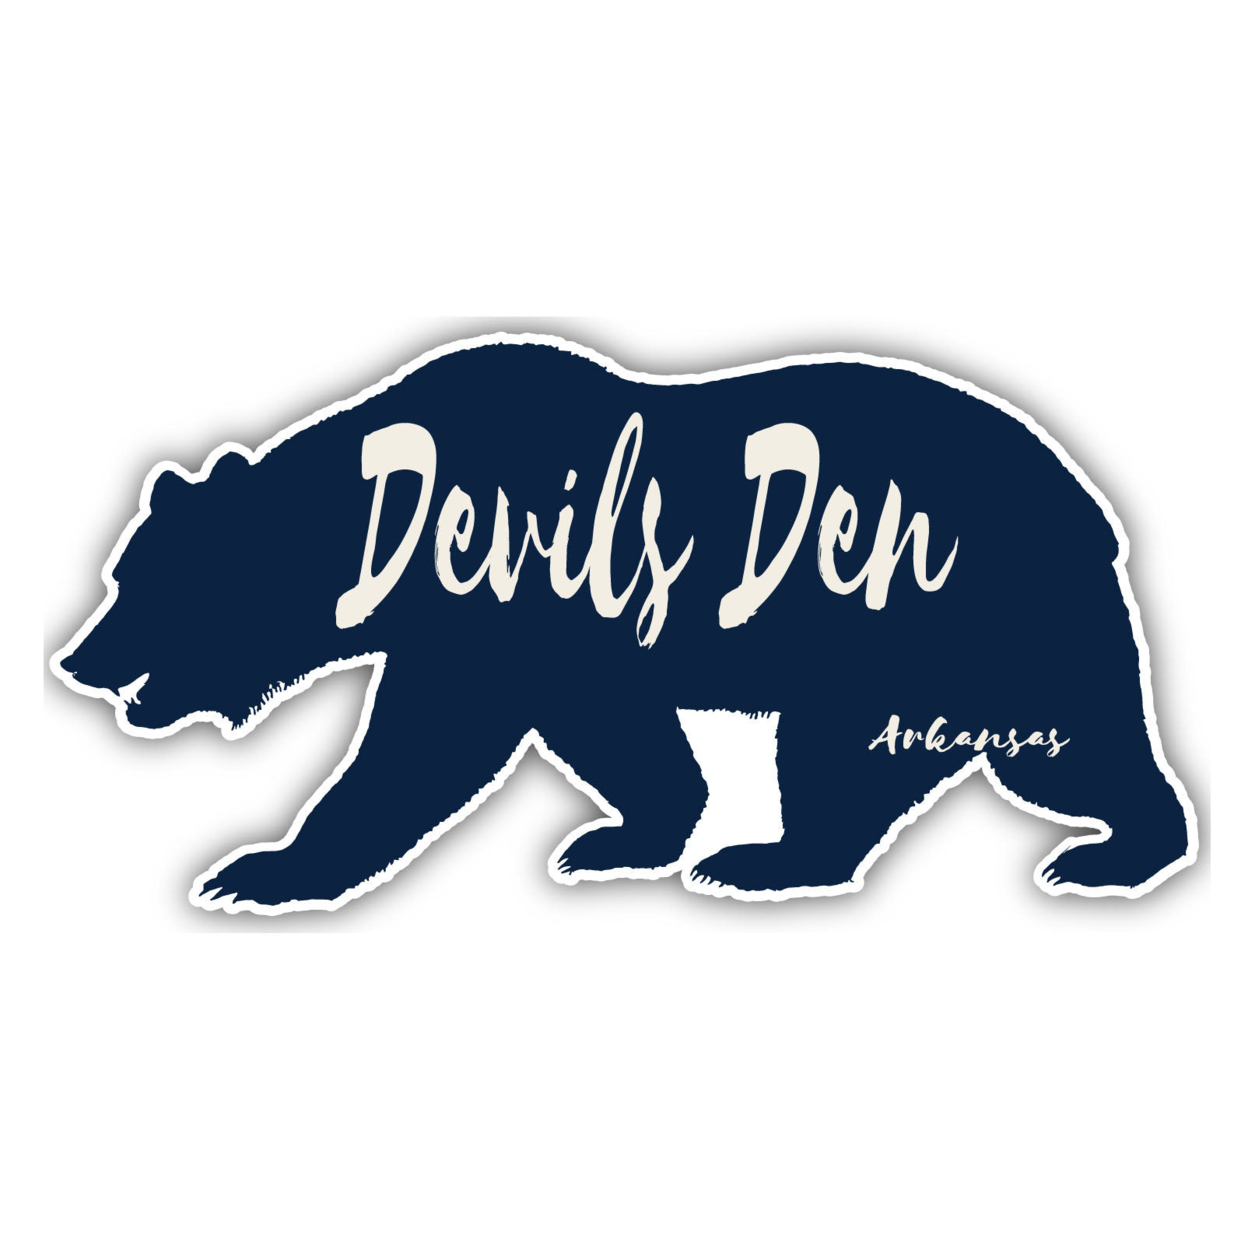 Devils Den Arkansas Souvenir Decorative Stickers (Choose Theme And Size) - Single Unit, 6-Inch, Bear